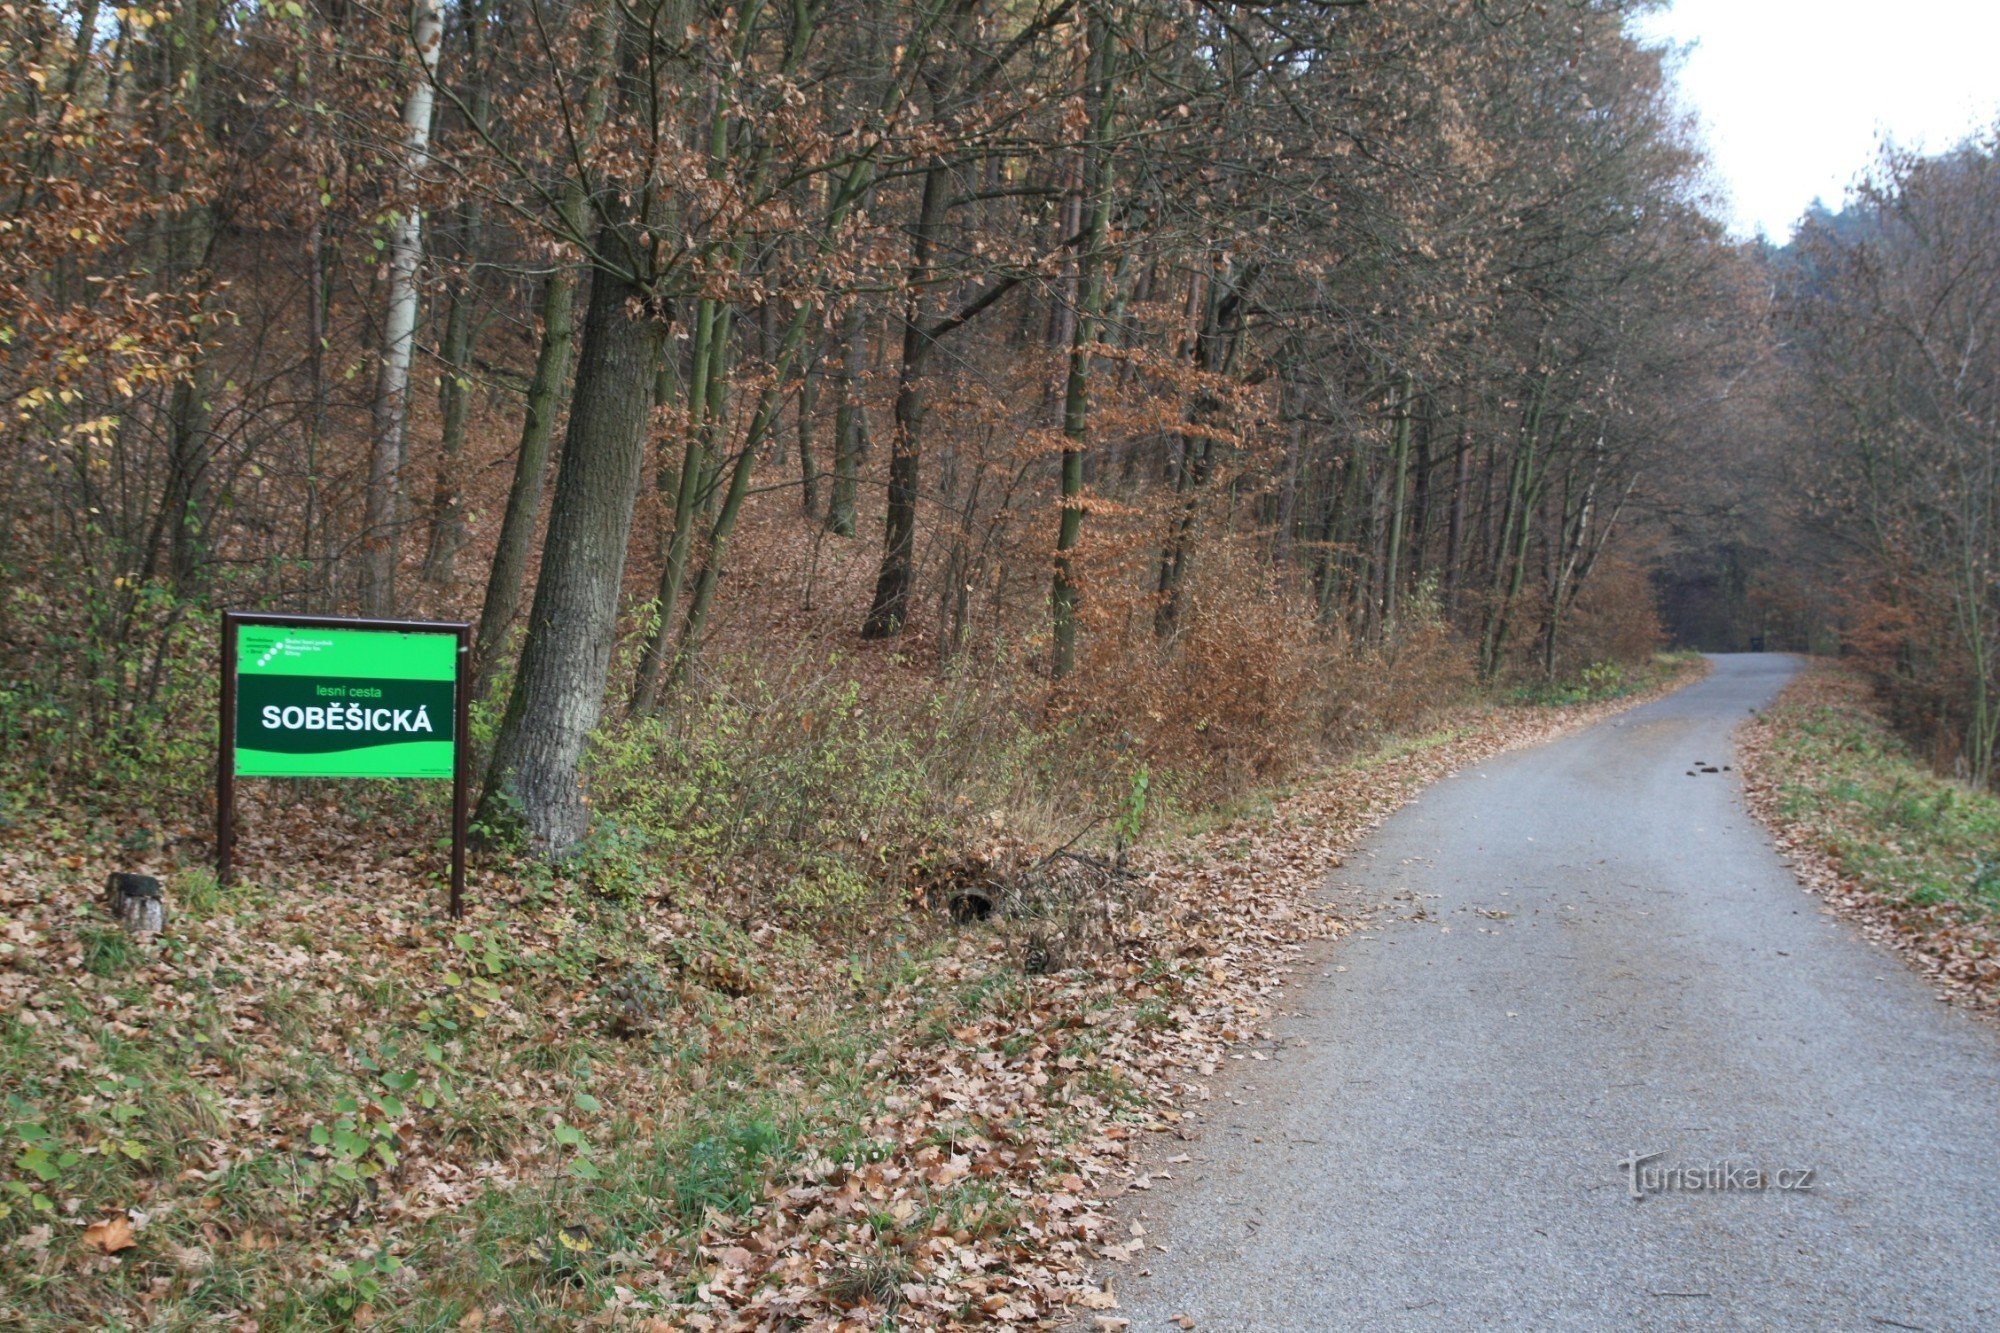 Cesta Soběšická începe la capătul satului, la începutul pădurii